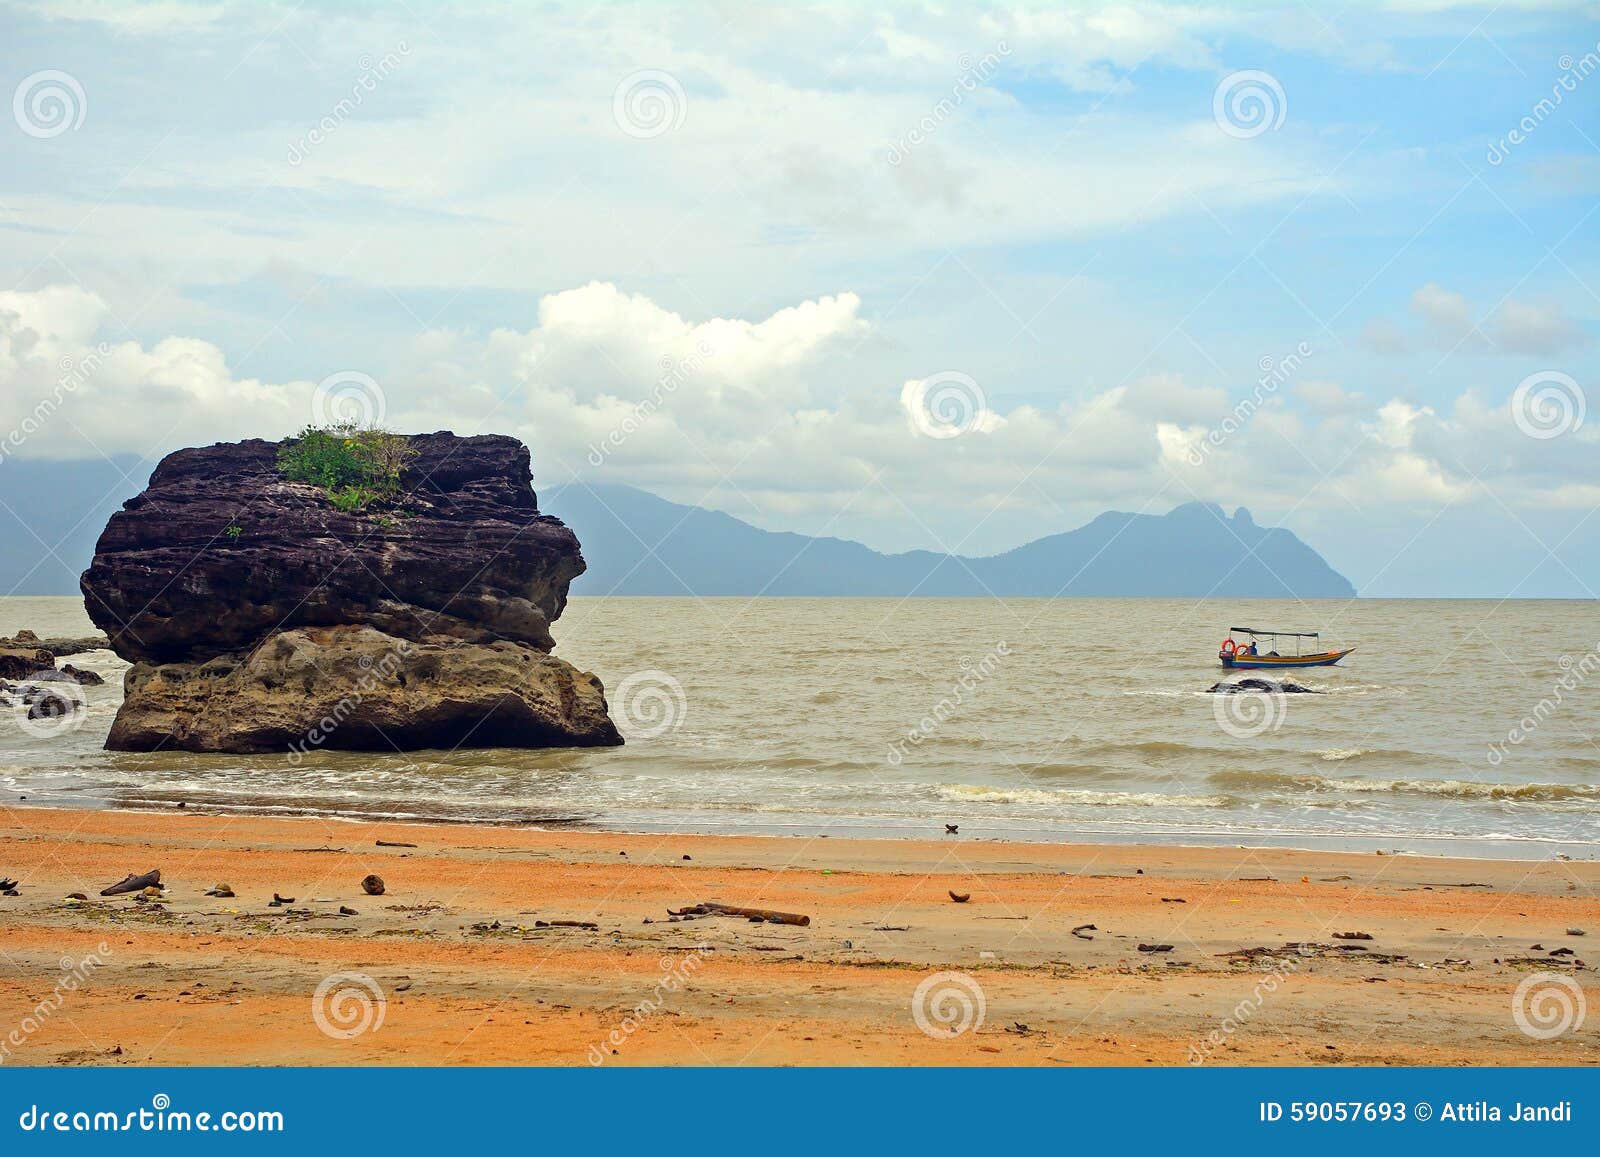 与岩石的海滩在婆罗洲,马来西亚.图片